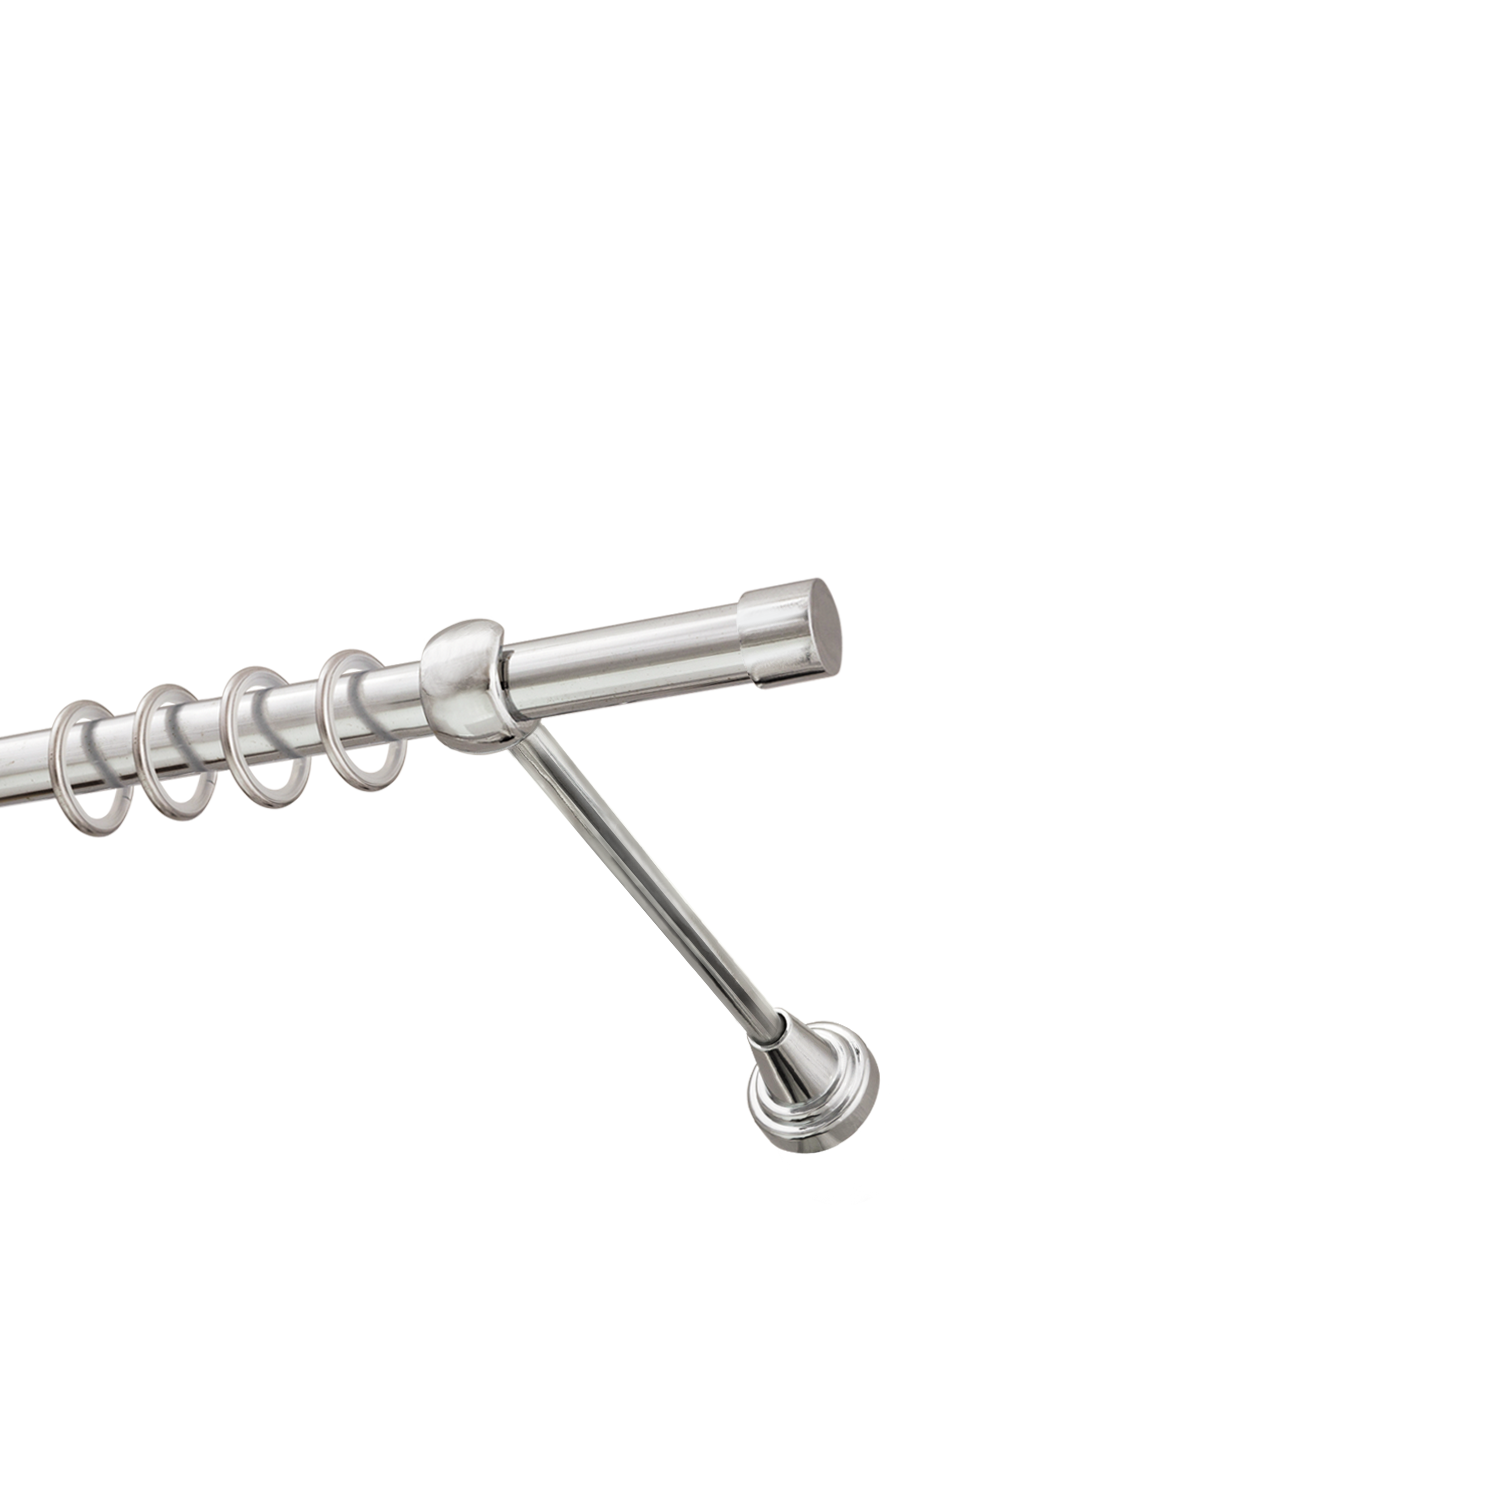 Металлический карниз для штор Заглушка, однорядный 16 мм, серебро, гладкая штанга, длина 240 см - фото Wikidecor.ru